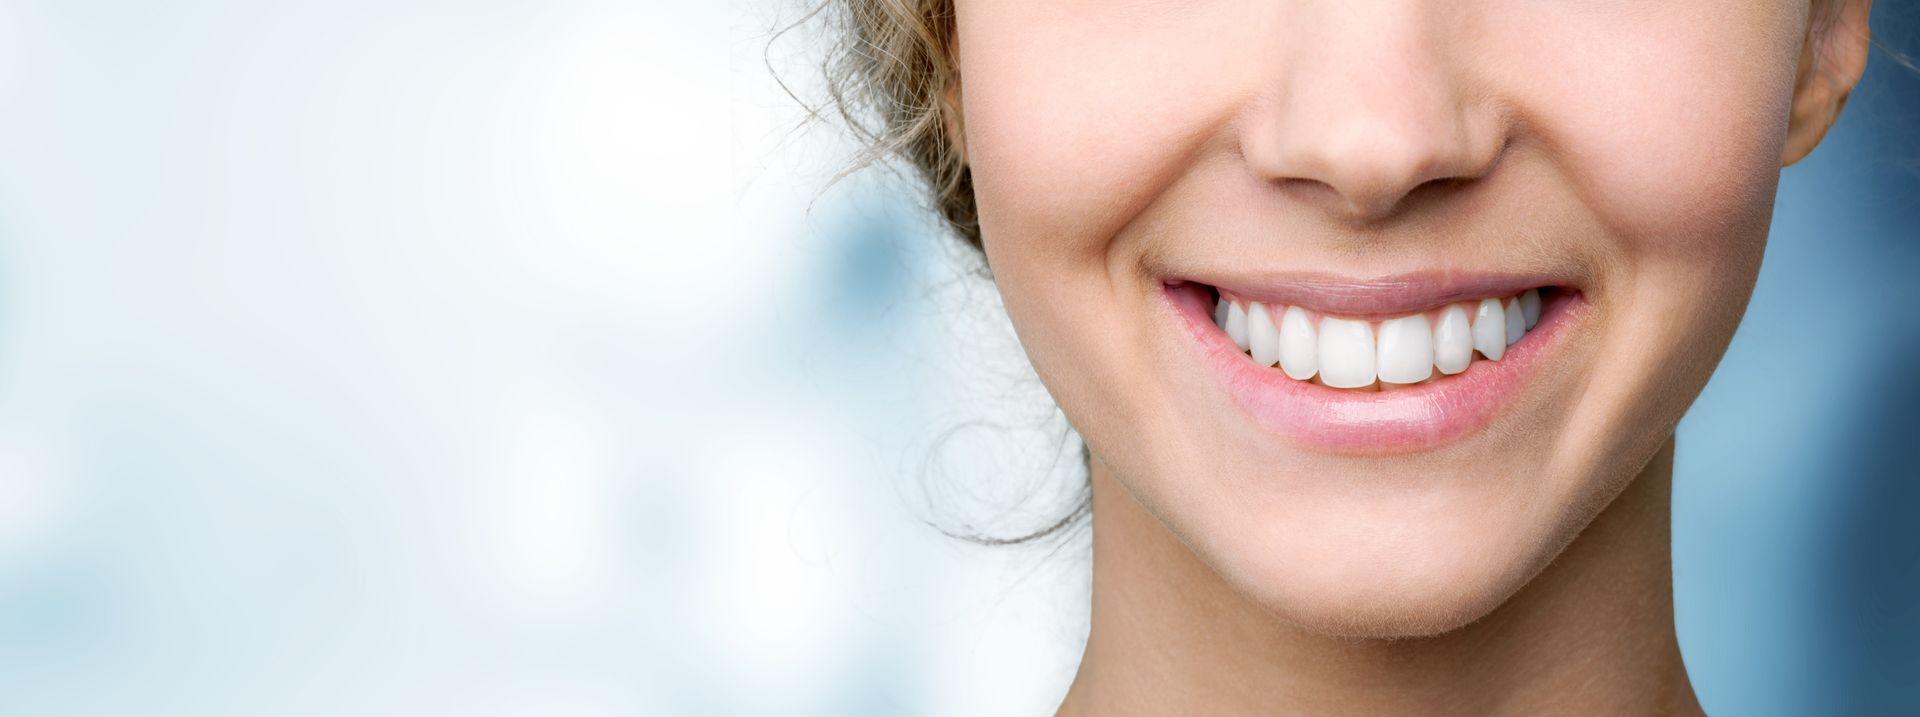 programa dá sorrisos , check up dentário, consultas de check-up dentário